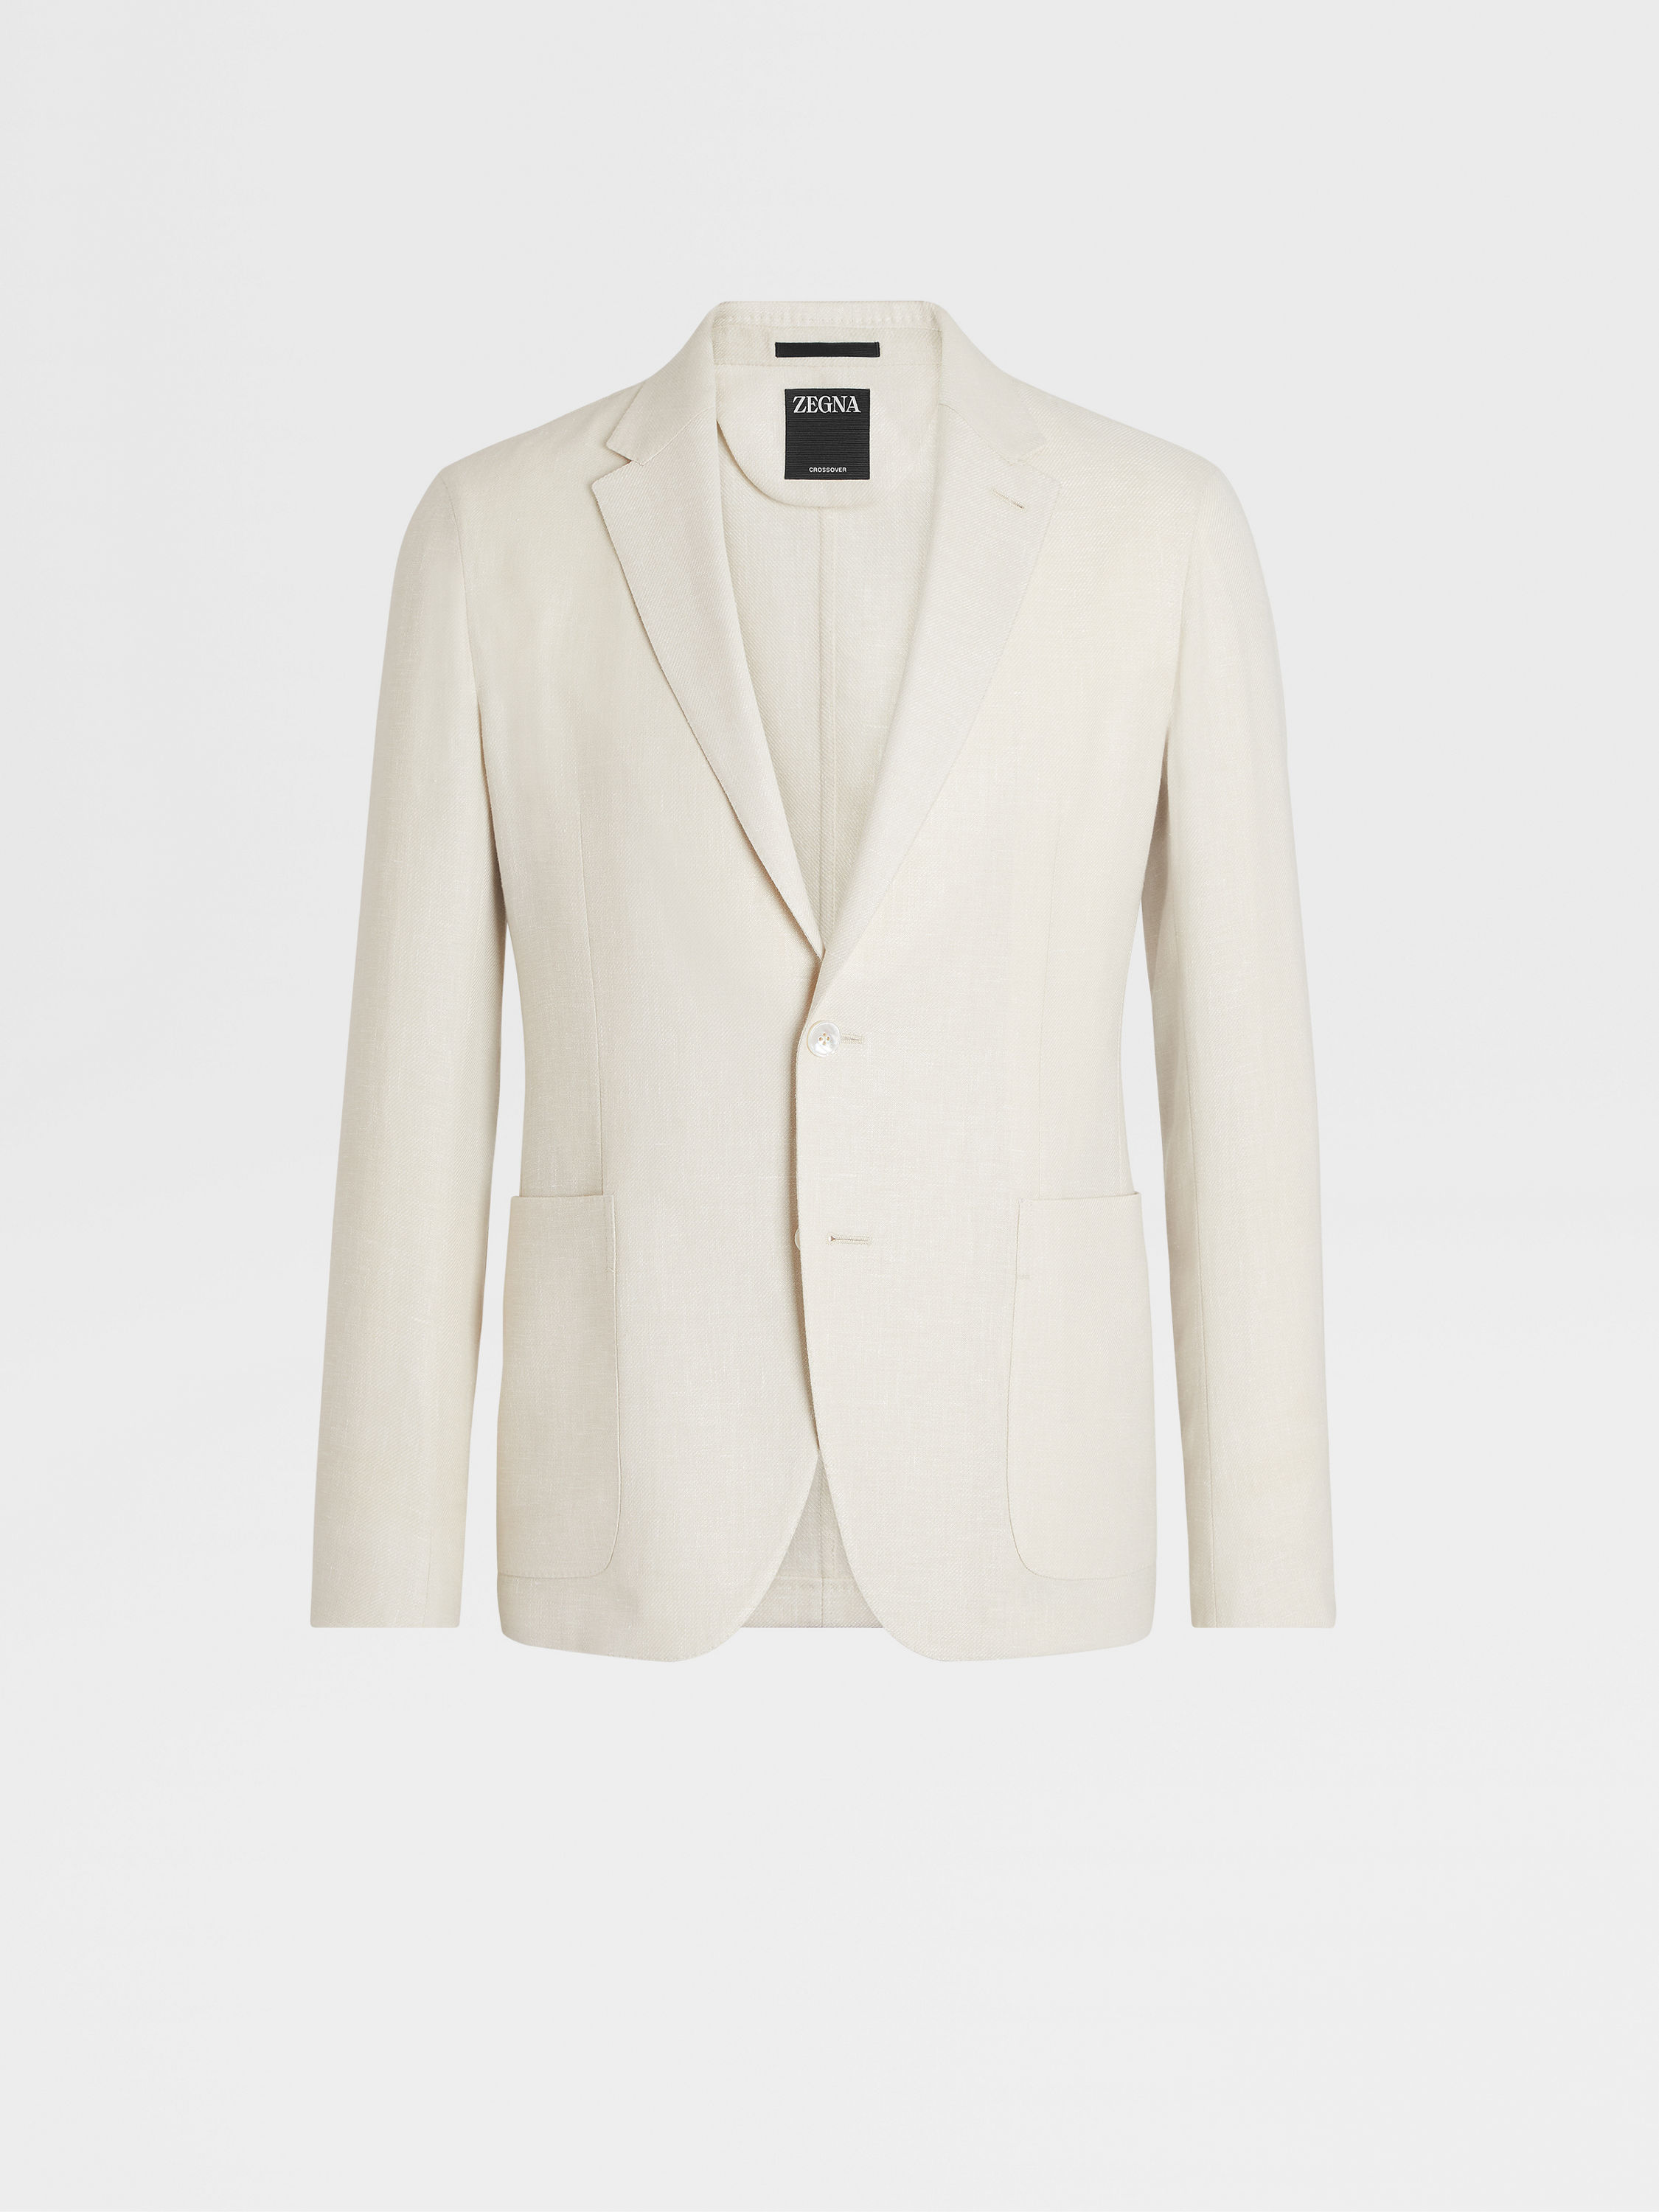 米白色微型结构 Crossover 亚麻及羊毛混纺衬衫夹克